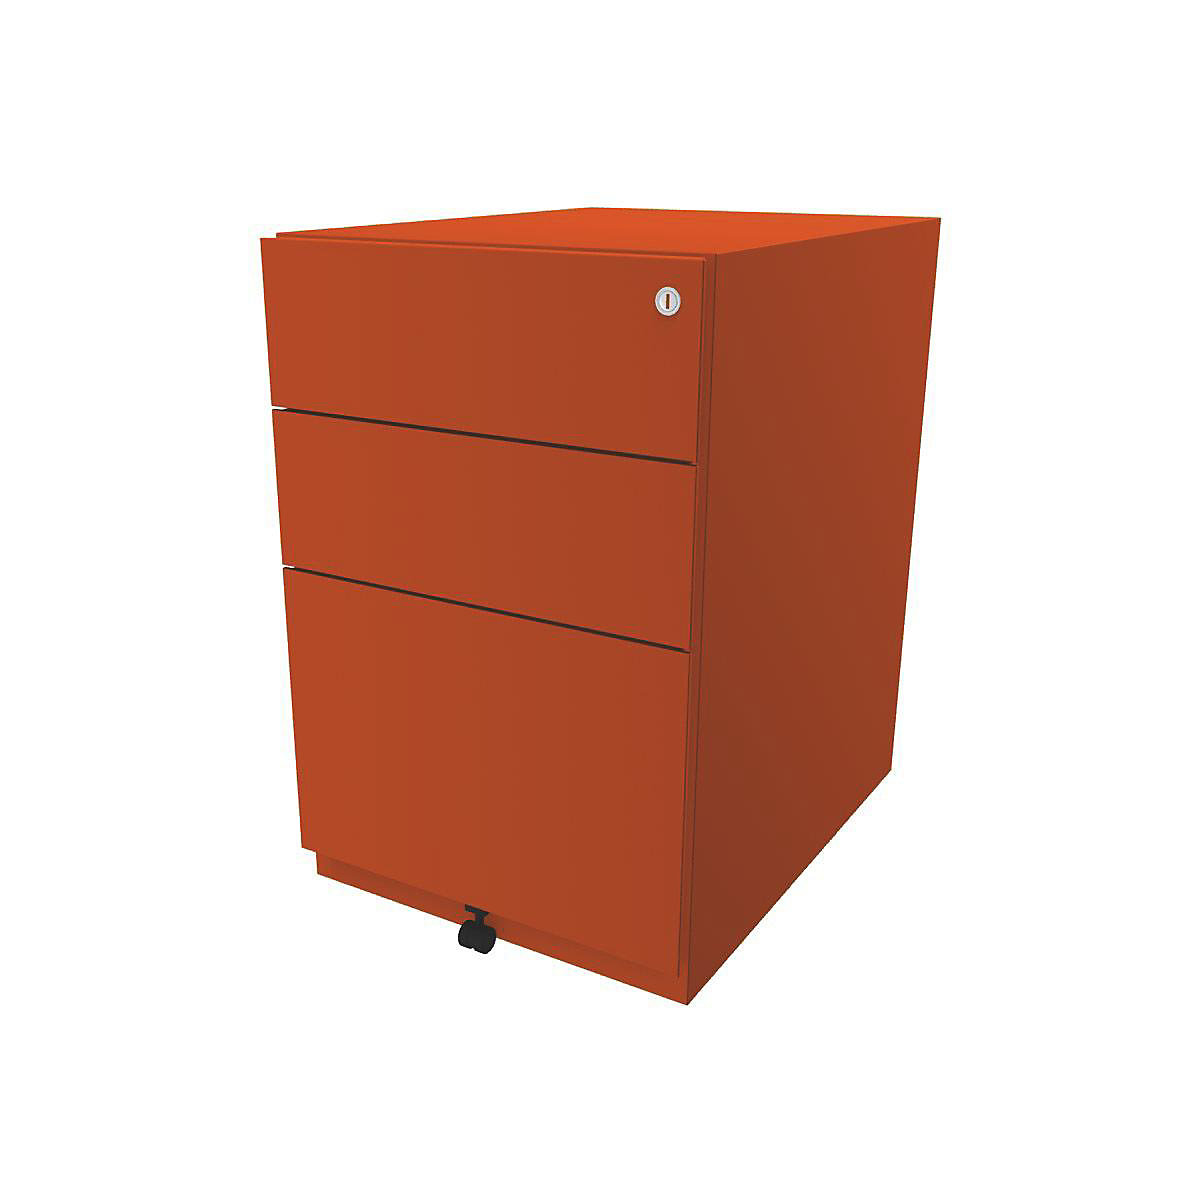 Pojazdný kontajner Note™, s 2 univerzálnymi zásuvkami, 1 závesná registratúra – BISLEY, v x š x h 645 x 420 x 565 mm, oranžová-1